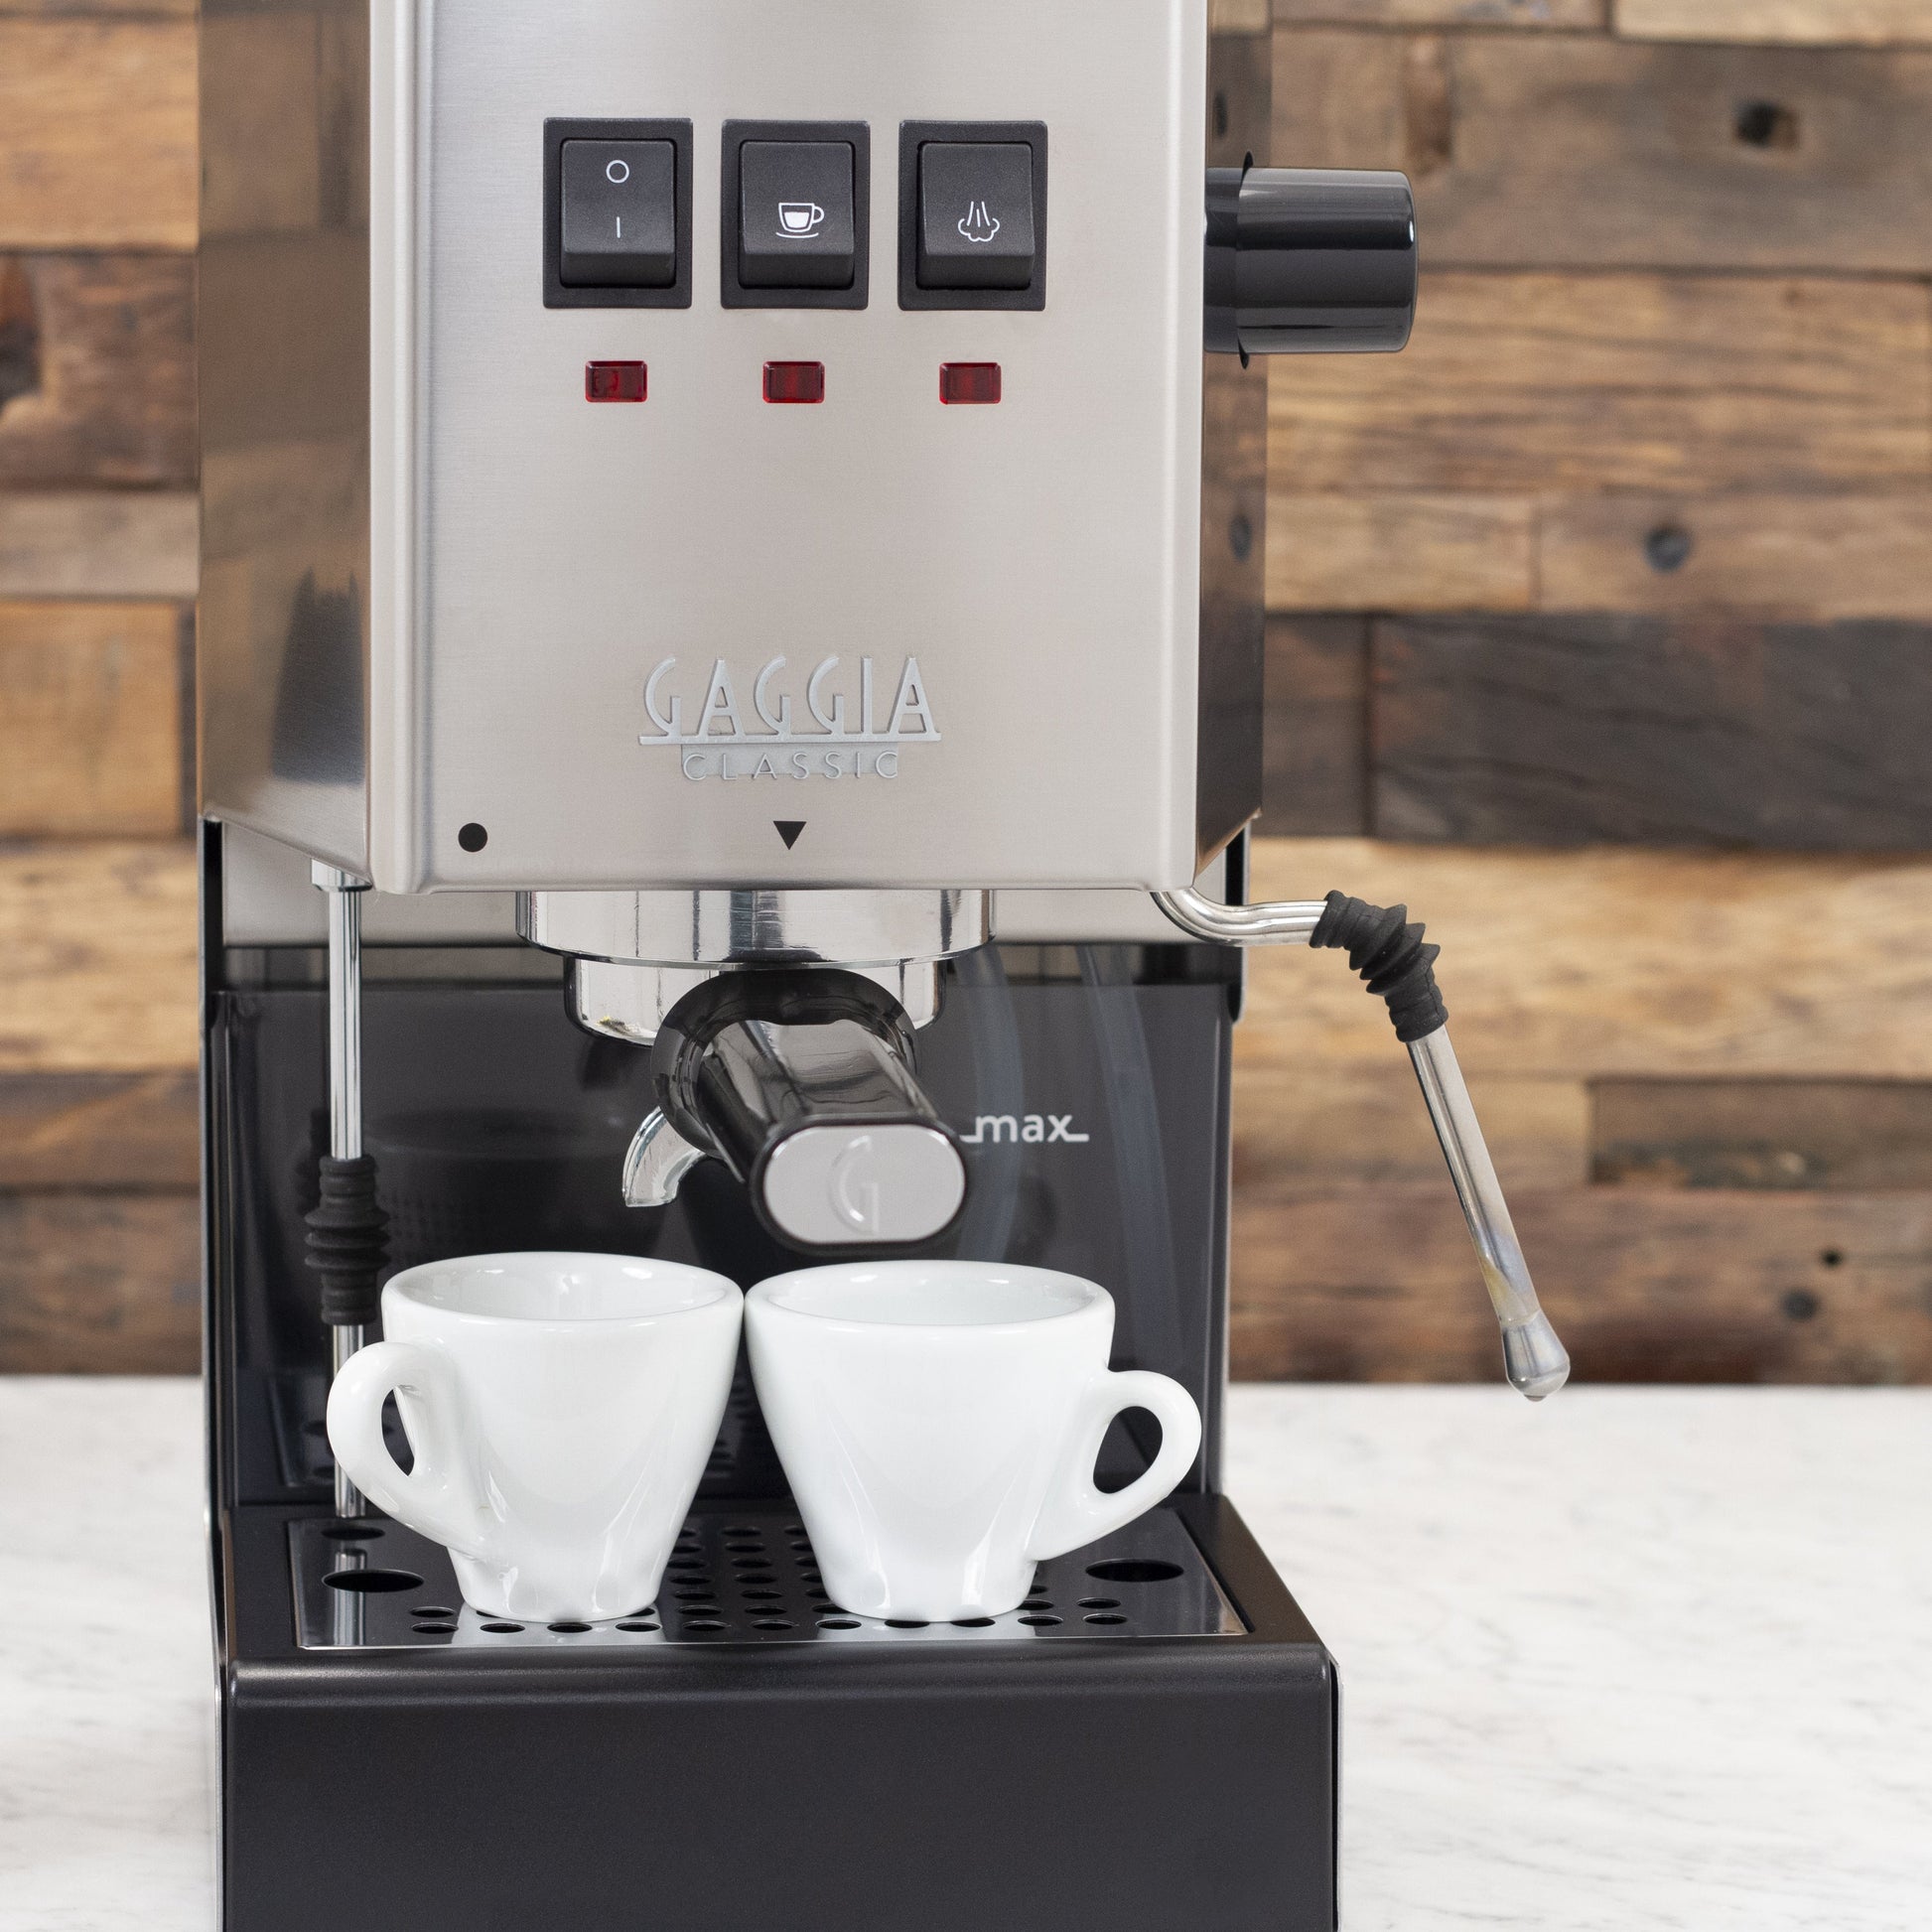  Gaggia RI9380/46 Classic Evo Pro Espresso Machine and Lavazza  Super Crema Whole Bean Coffee Blend : Grocery & Gourmet Food